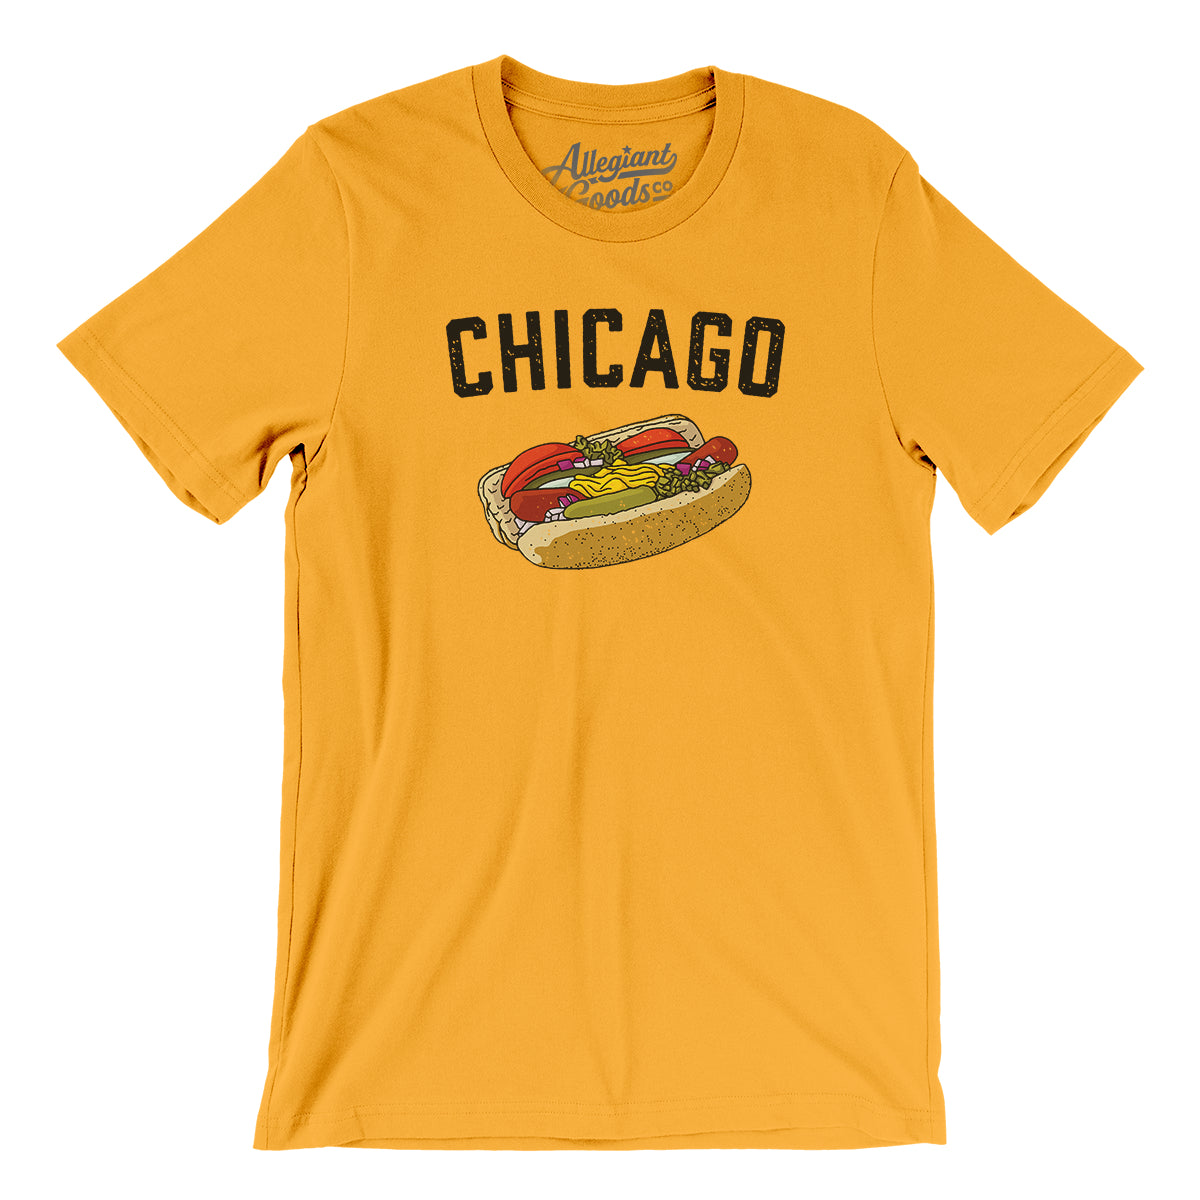 Hotdog T-Shirt XL